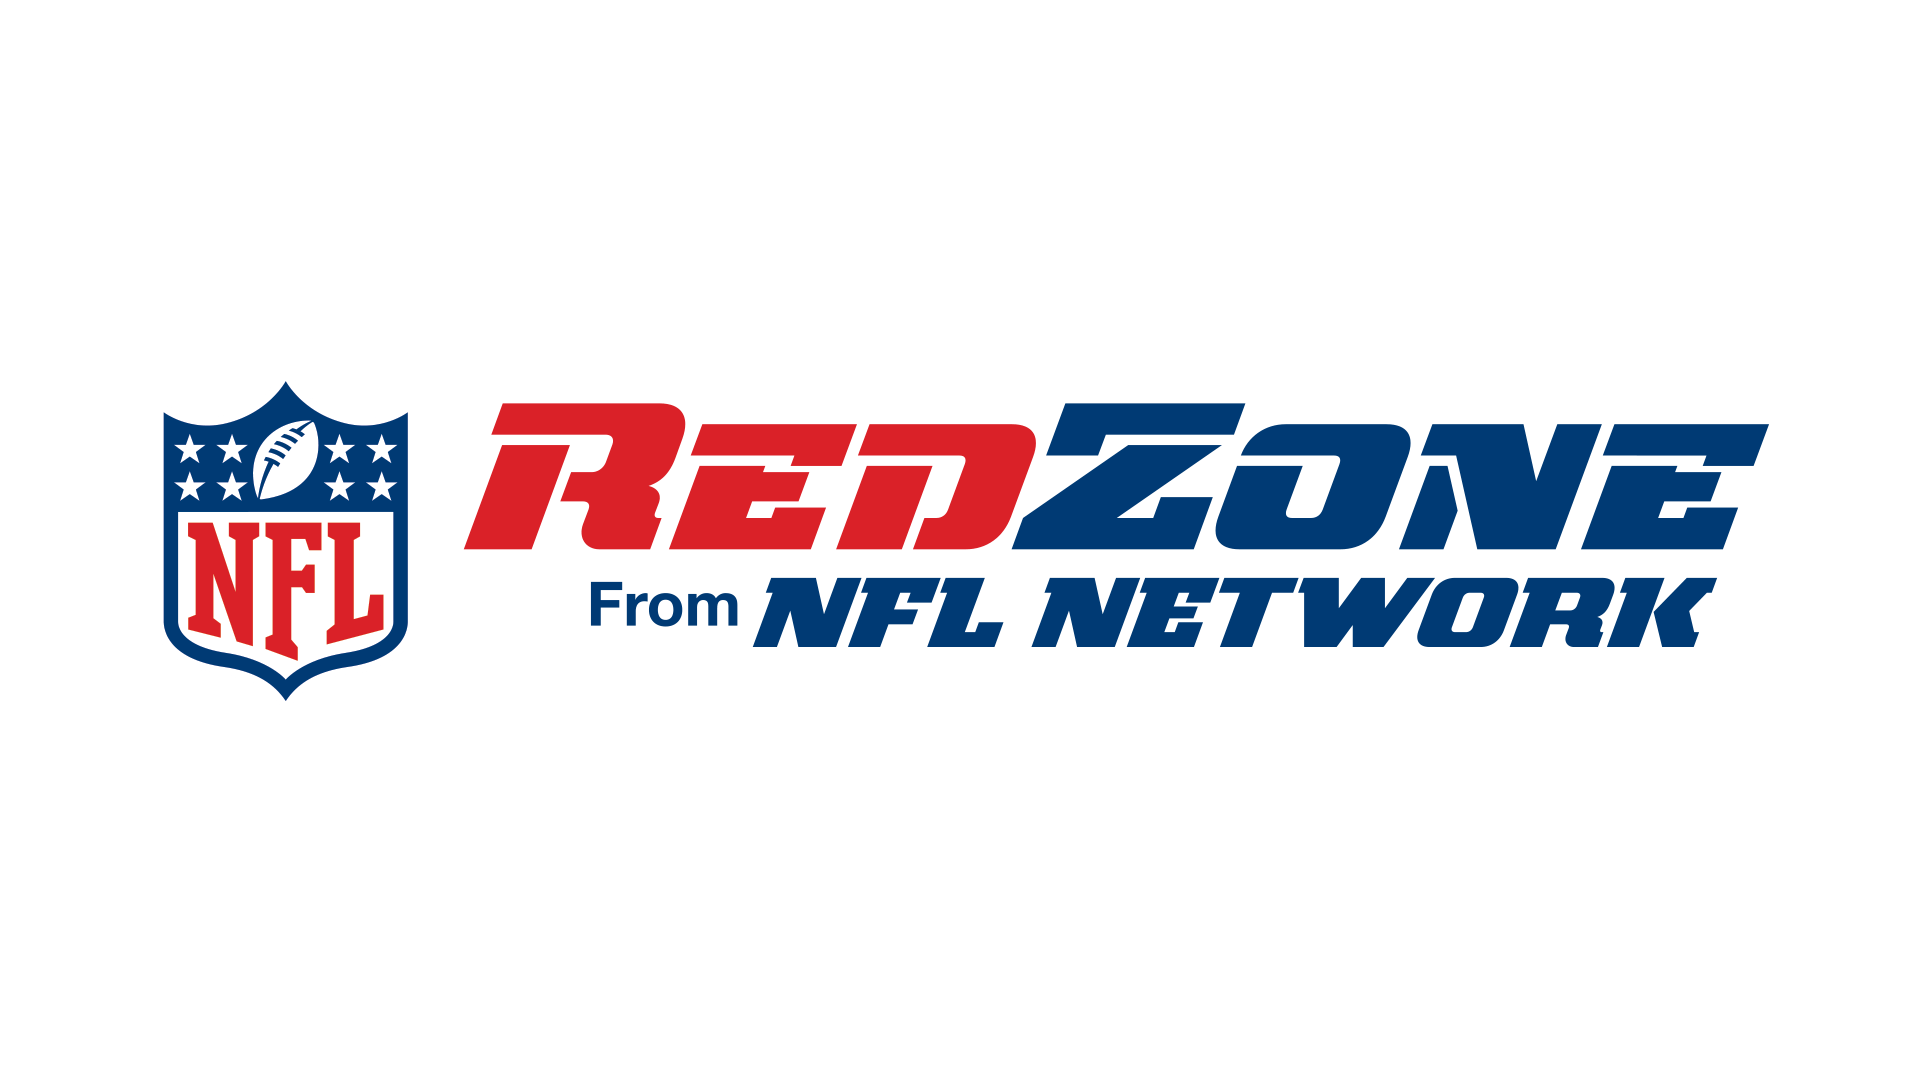 NFL Network Logo - Image - Nfl-redzone-2014-logo.png | Logopedia | FANDOM powered by Wikia